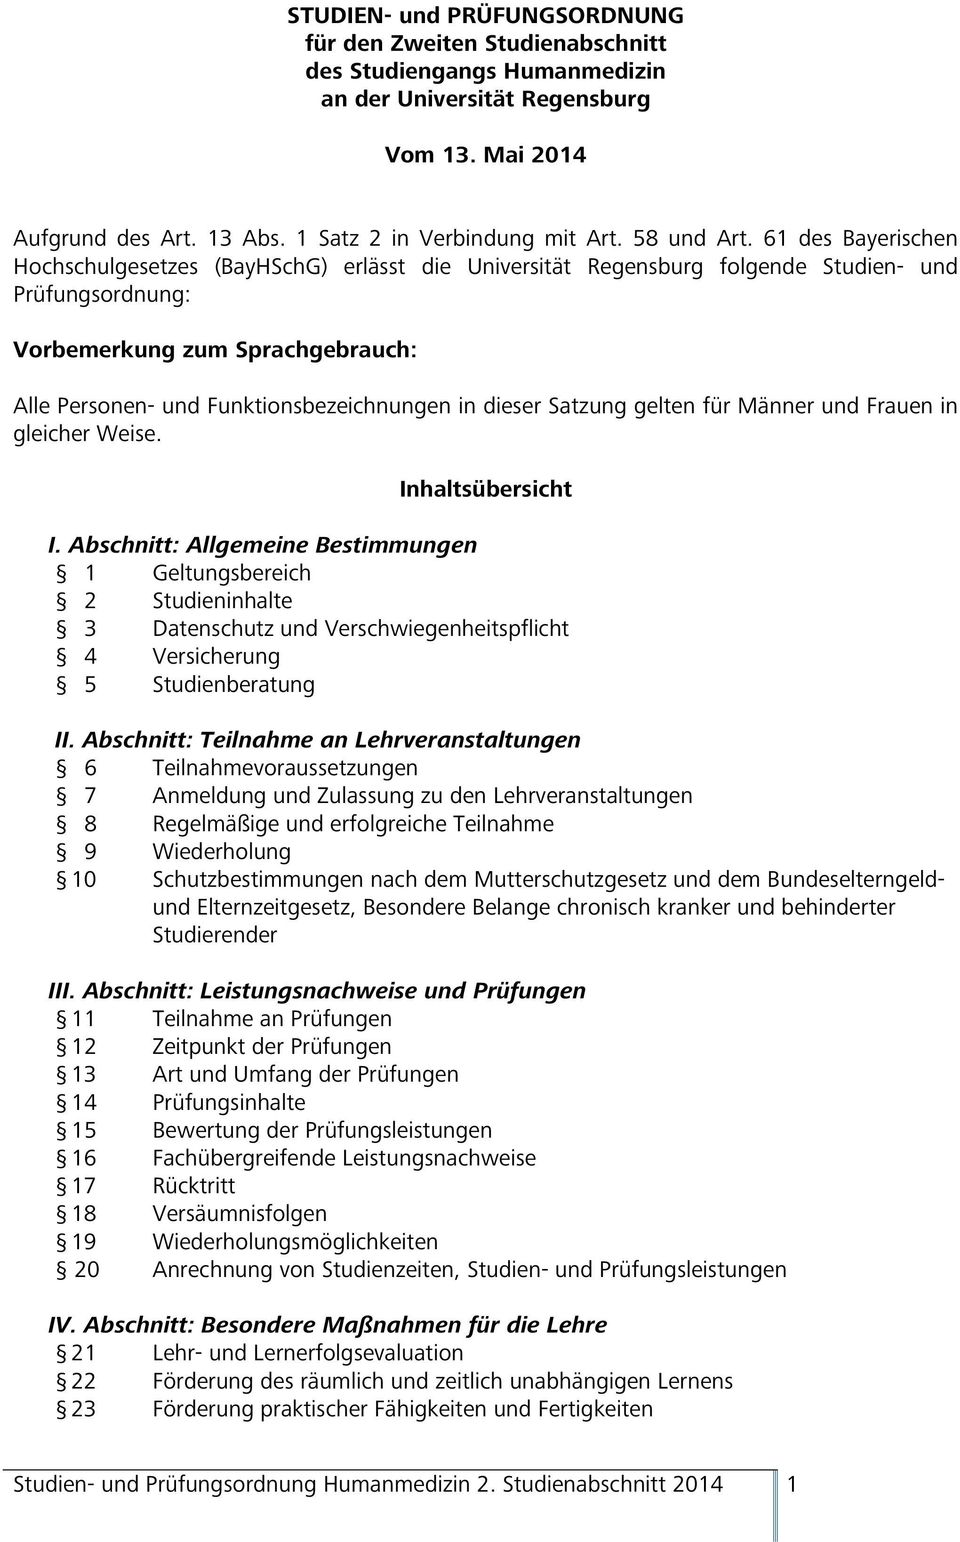 61 des Bayerischen Hochschulgesetzes (BayHSchG) erlässt die Universität Regensburg folgende Studien- und Prüfungsordnung: Vorbemerkung zum Sprachgebrauch: Alle Personen- und Funktionsbezeichnungen in